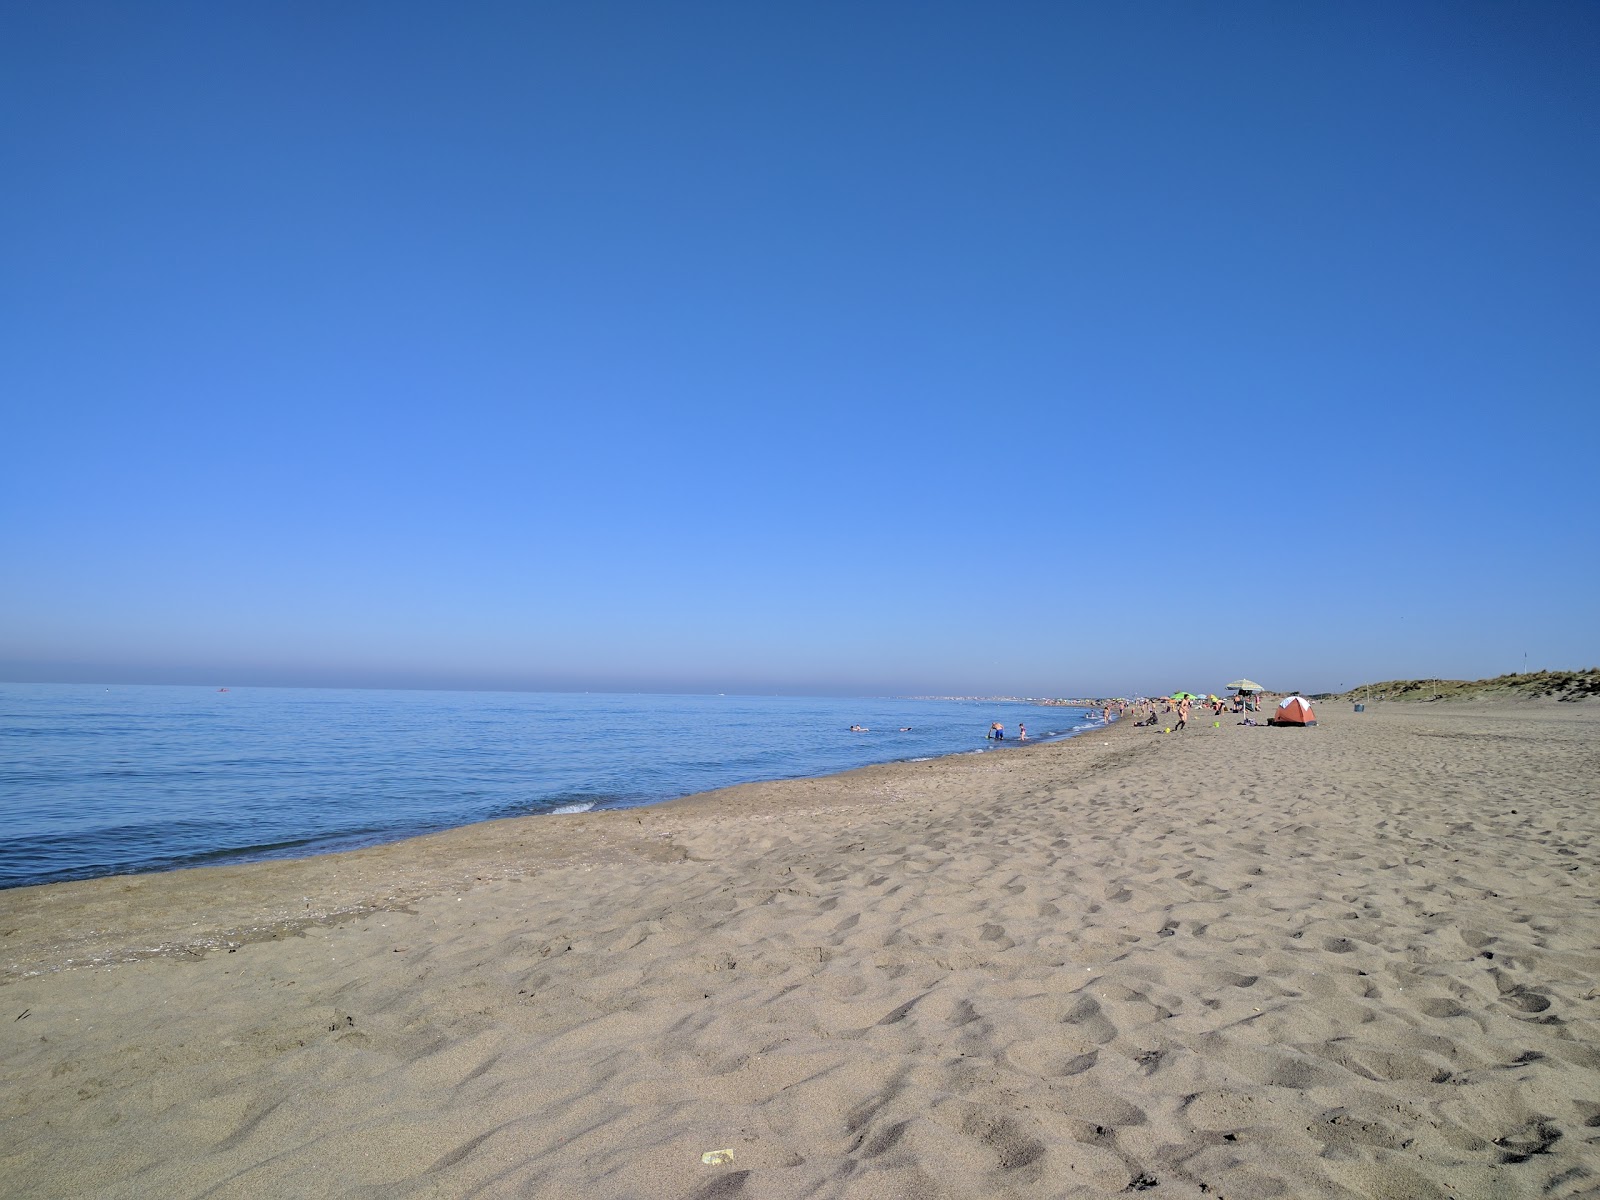 Fotografie cu Castel Porziano beach cu o suprafață de nisip maro